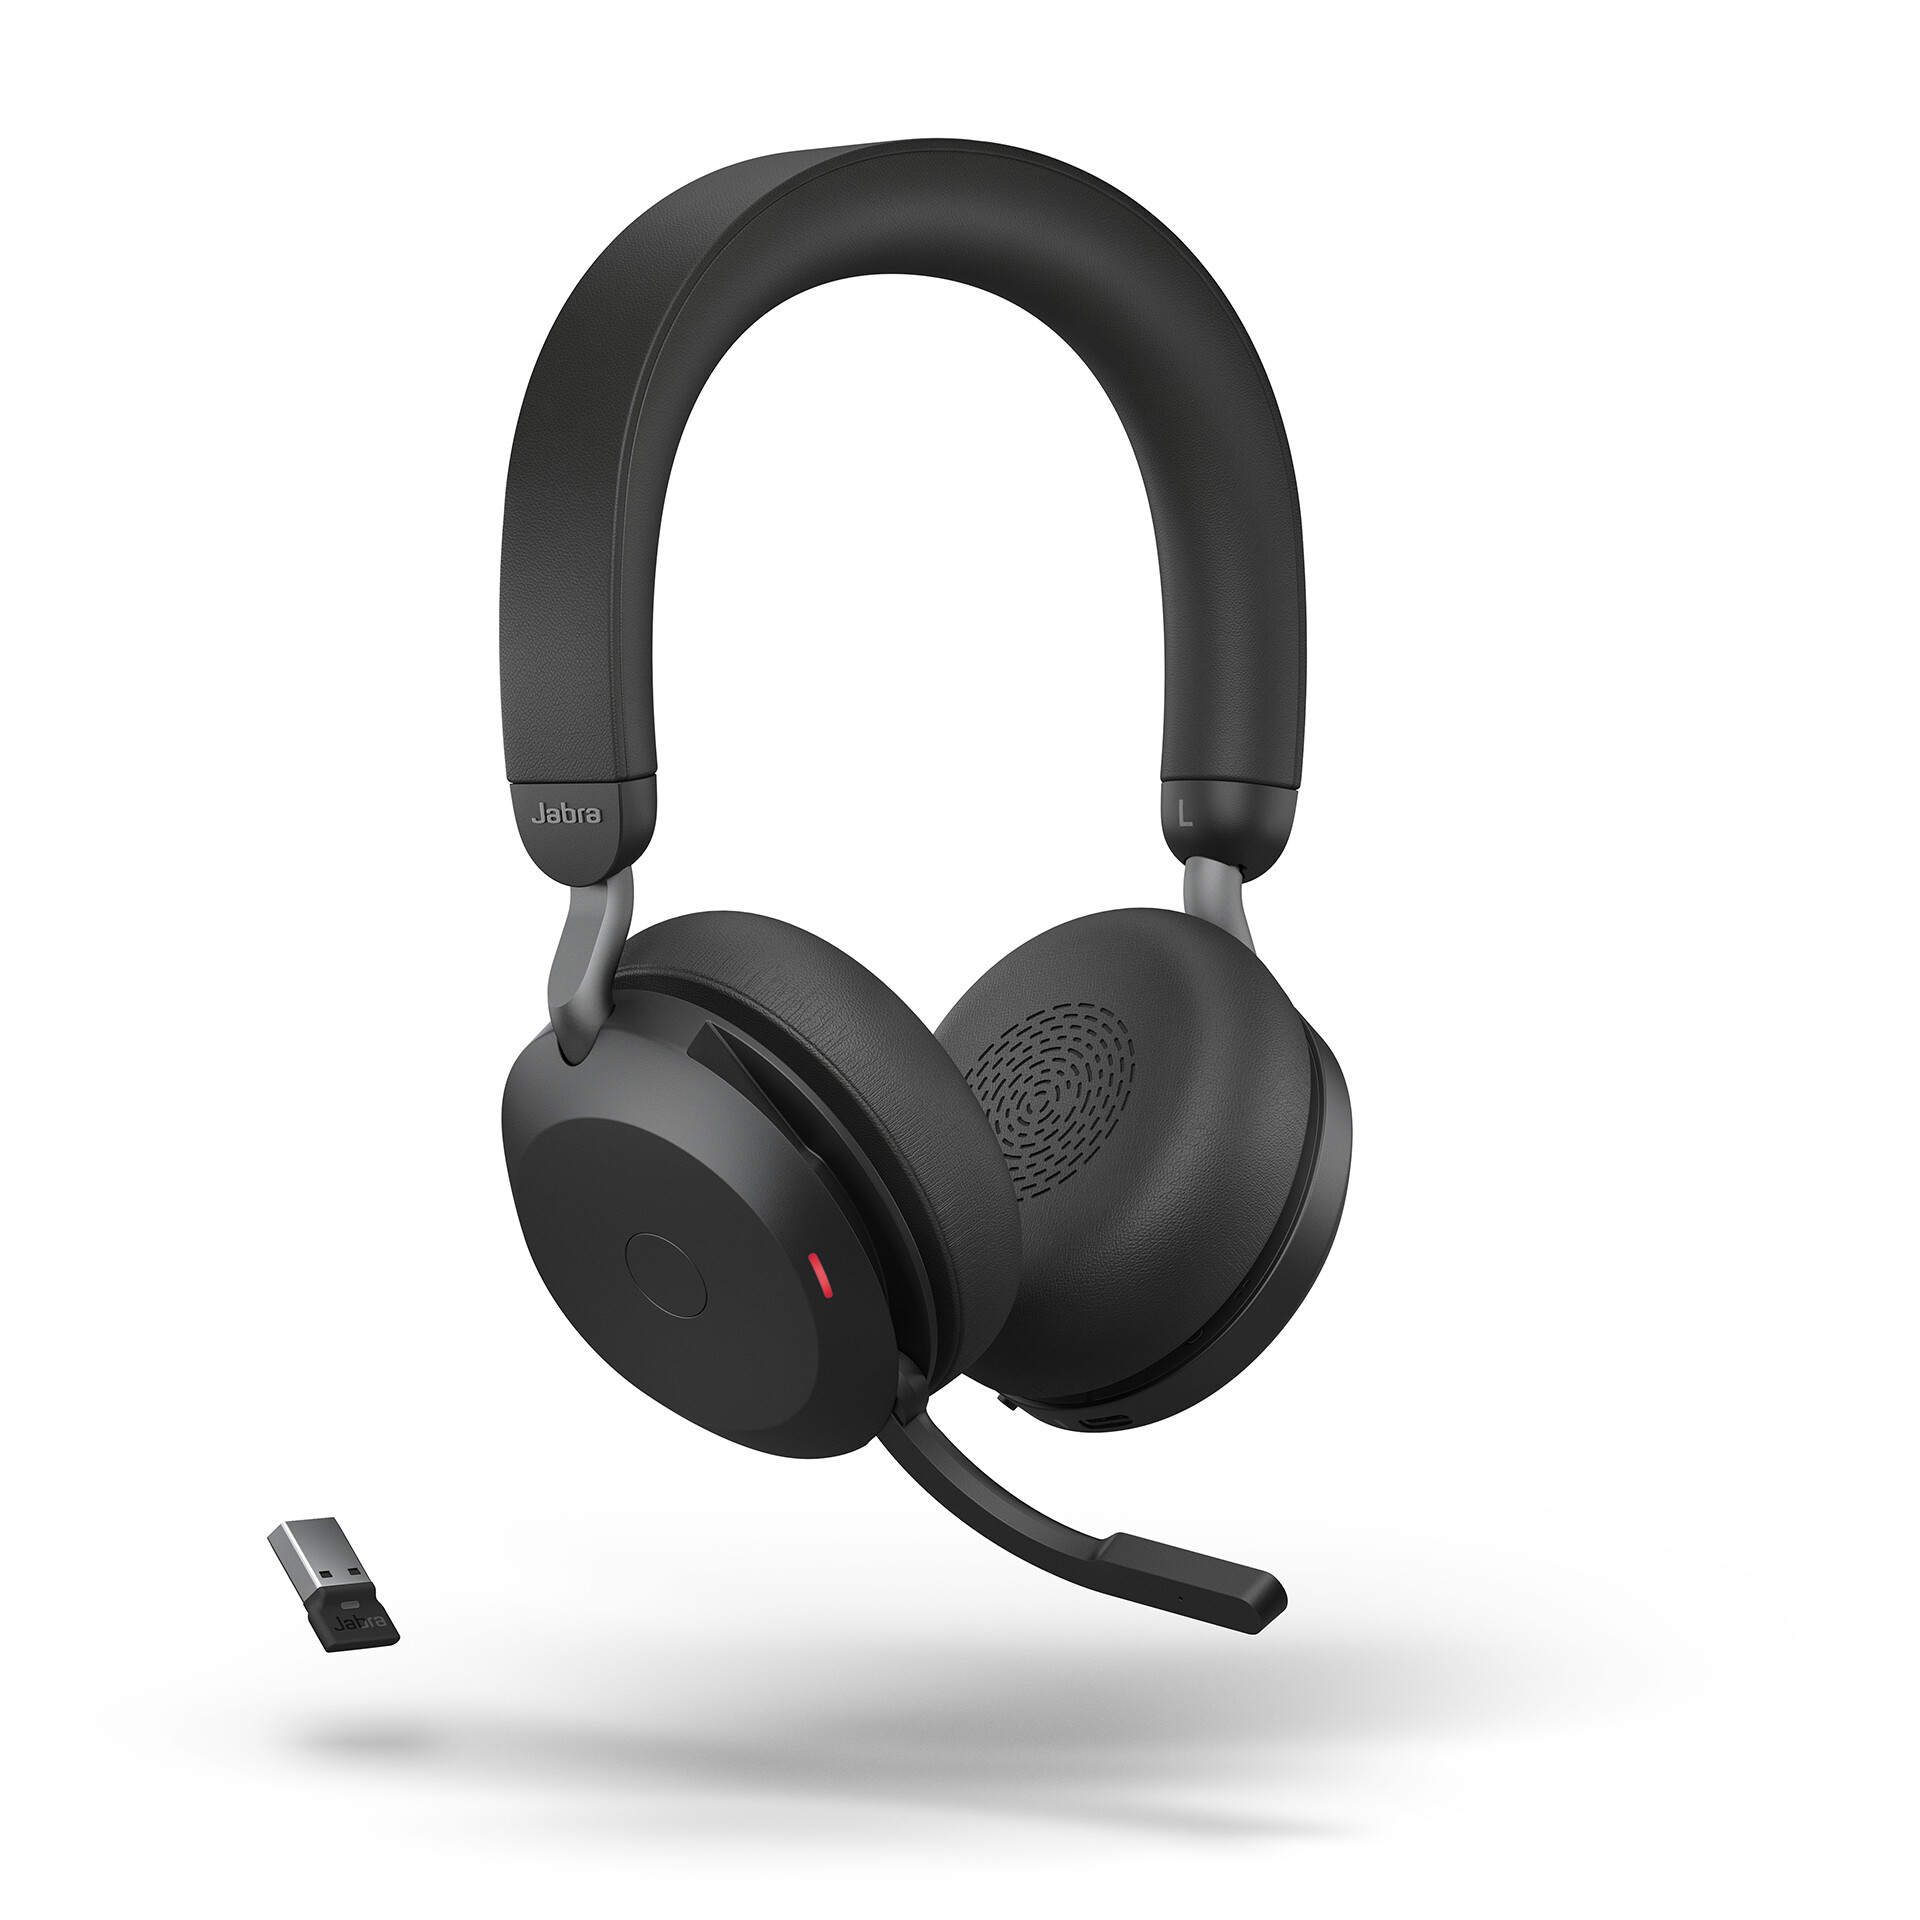 Jabra-Evolve2-75-draadloze-Stereo-Headset-voor-UC-Bluetooth-USB-A-aansluiting-zwart